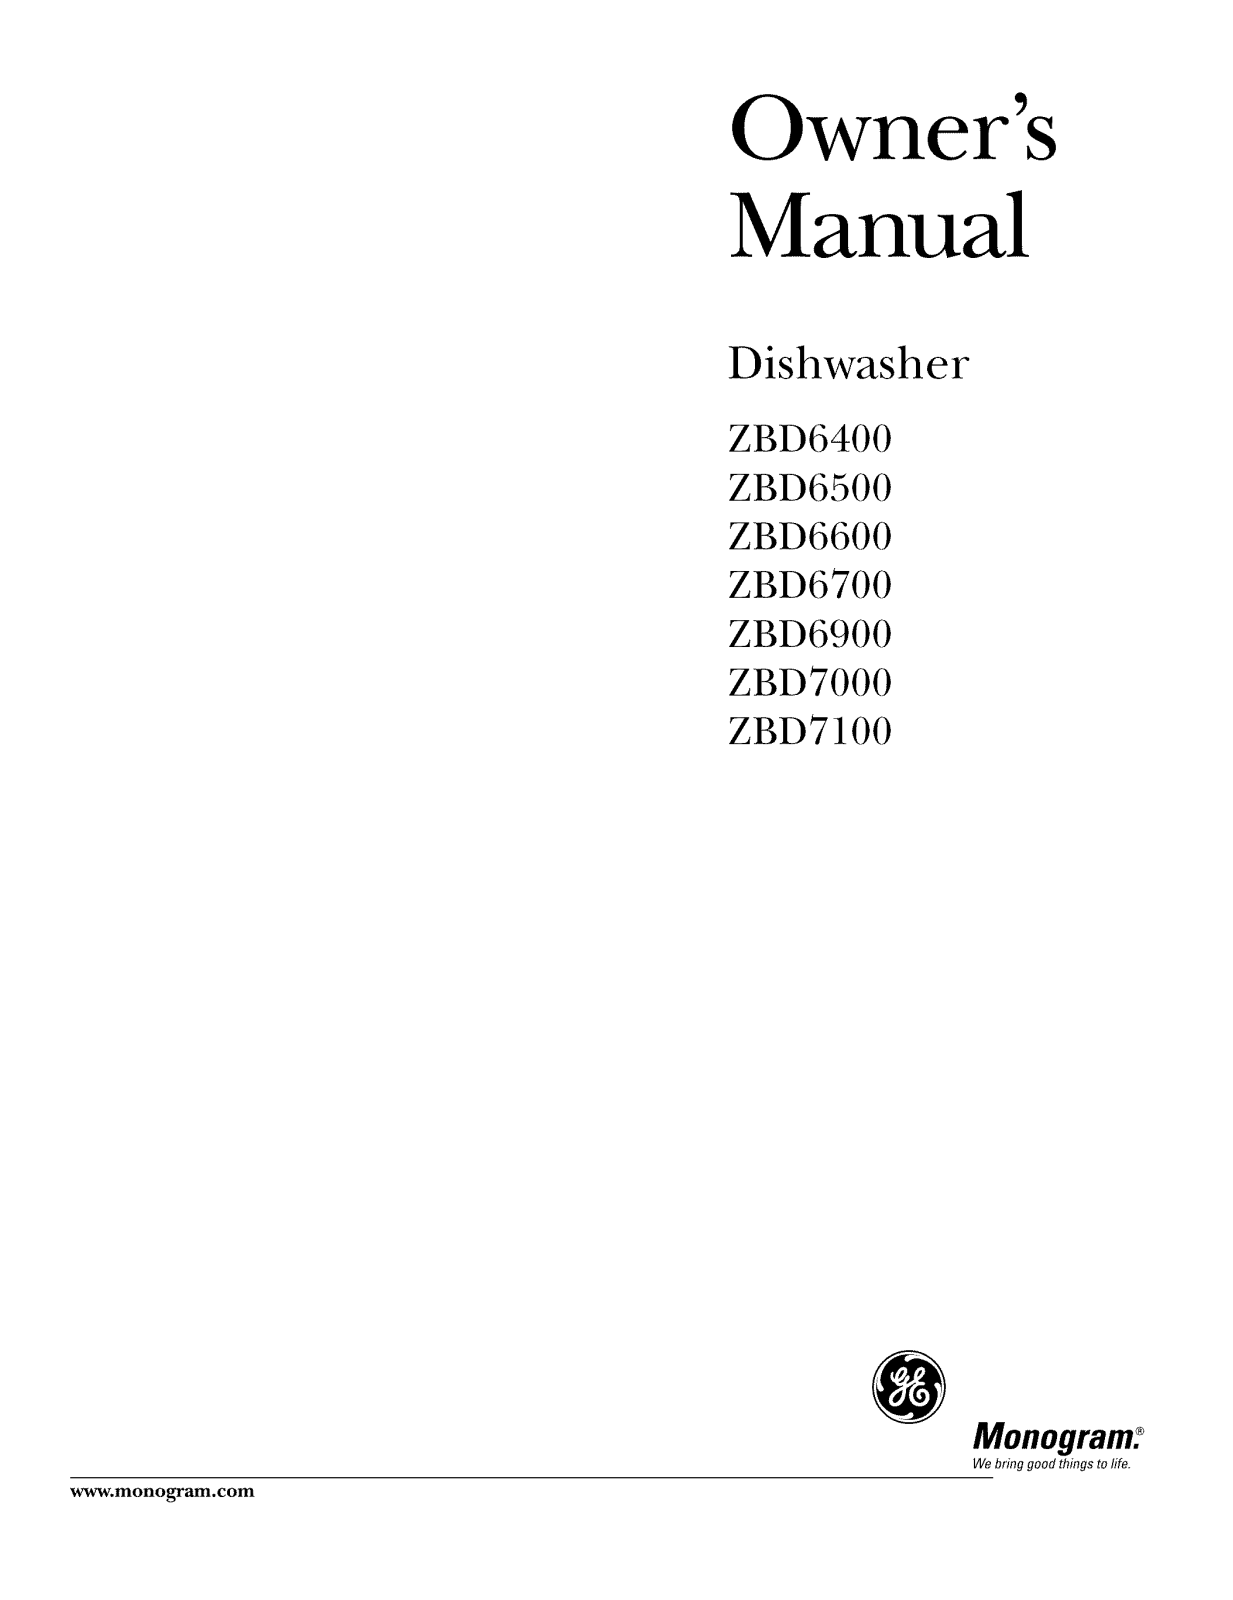 GE ZBD7100G05SS, ZBD7100G04SS, ZBD7100G03SS, ZBD7100G02SS, ZBD7100G01SS Owner’s Manual